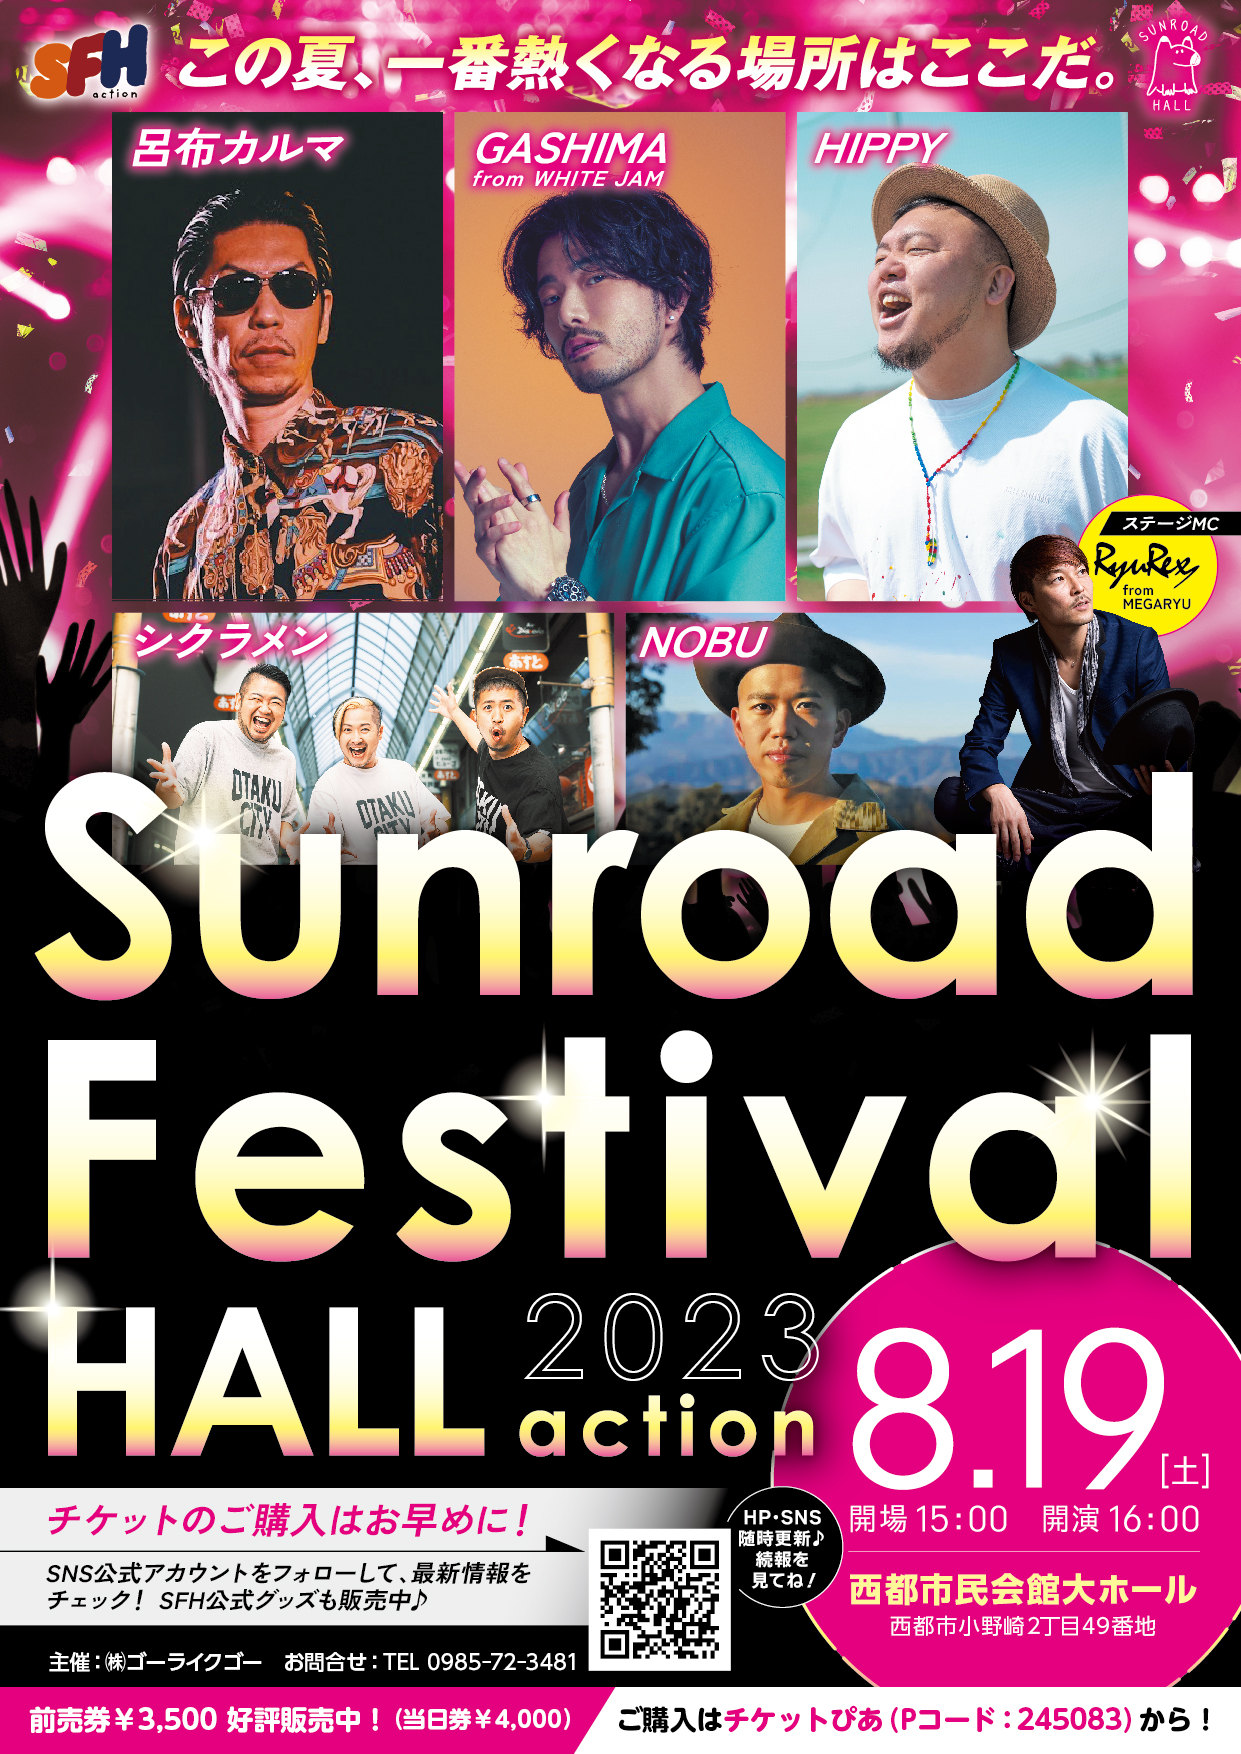 【貸館情報】Sunroad　Festival　Hall　2023actionの画像